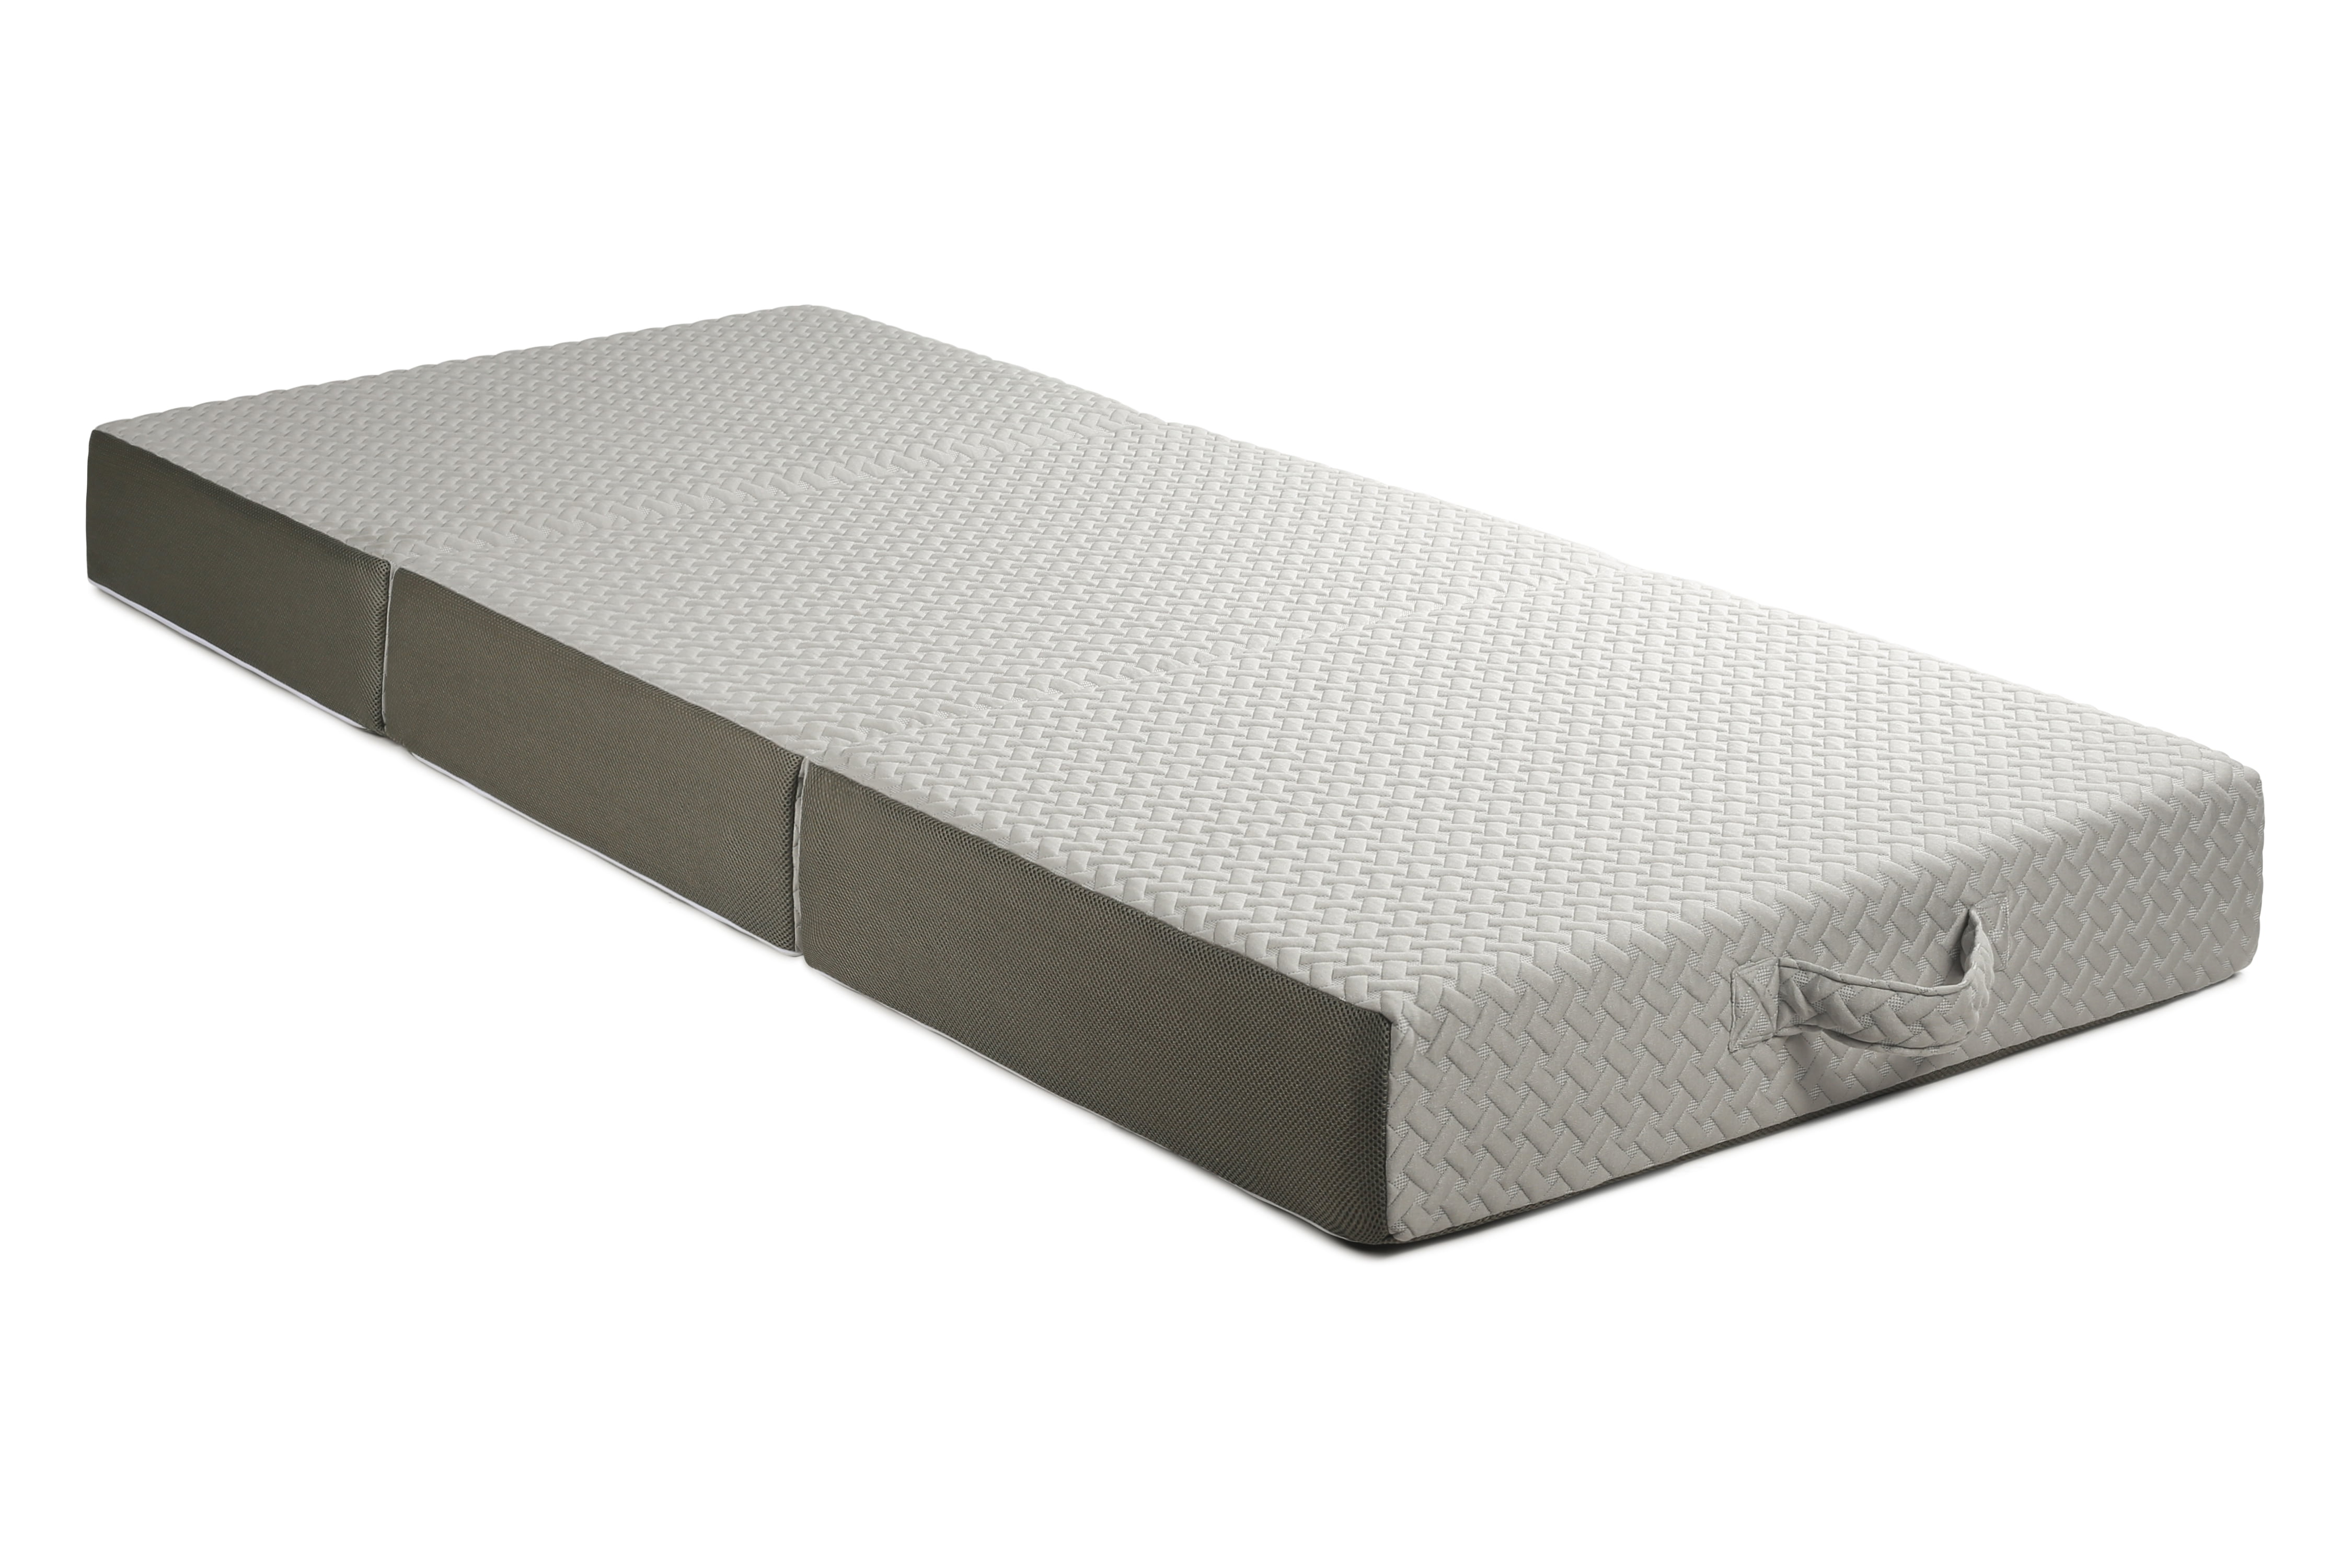 31 x 75 foam mattress